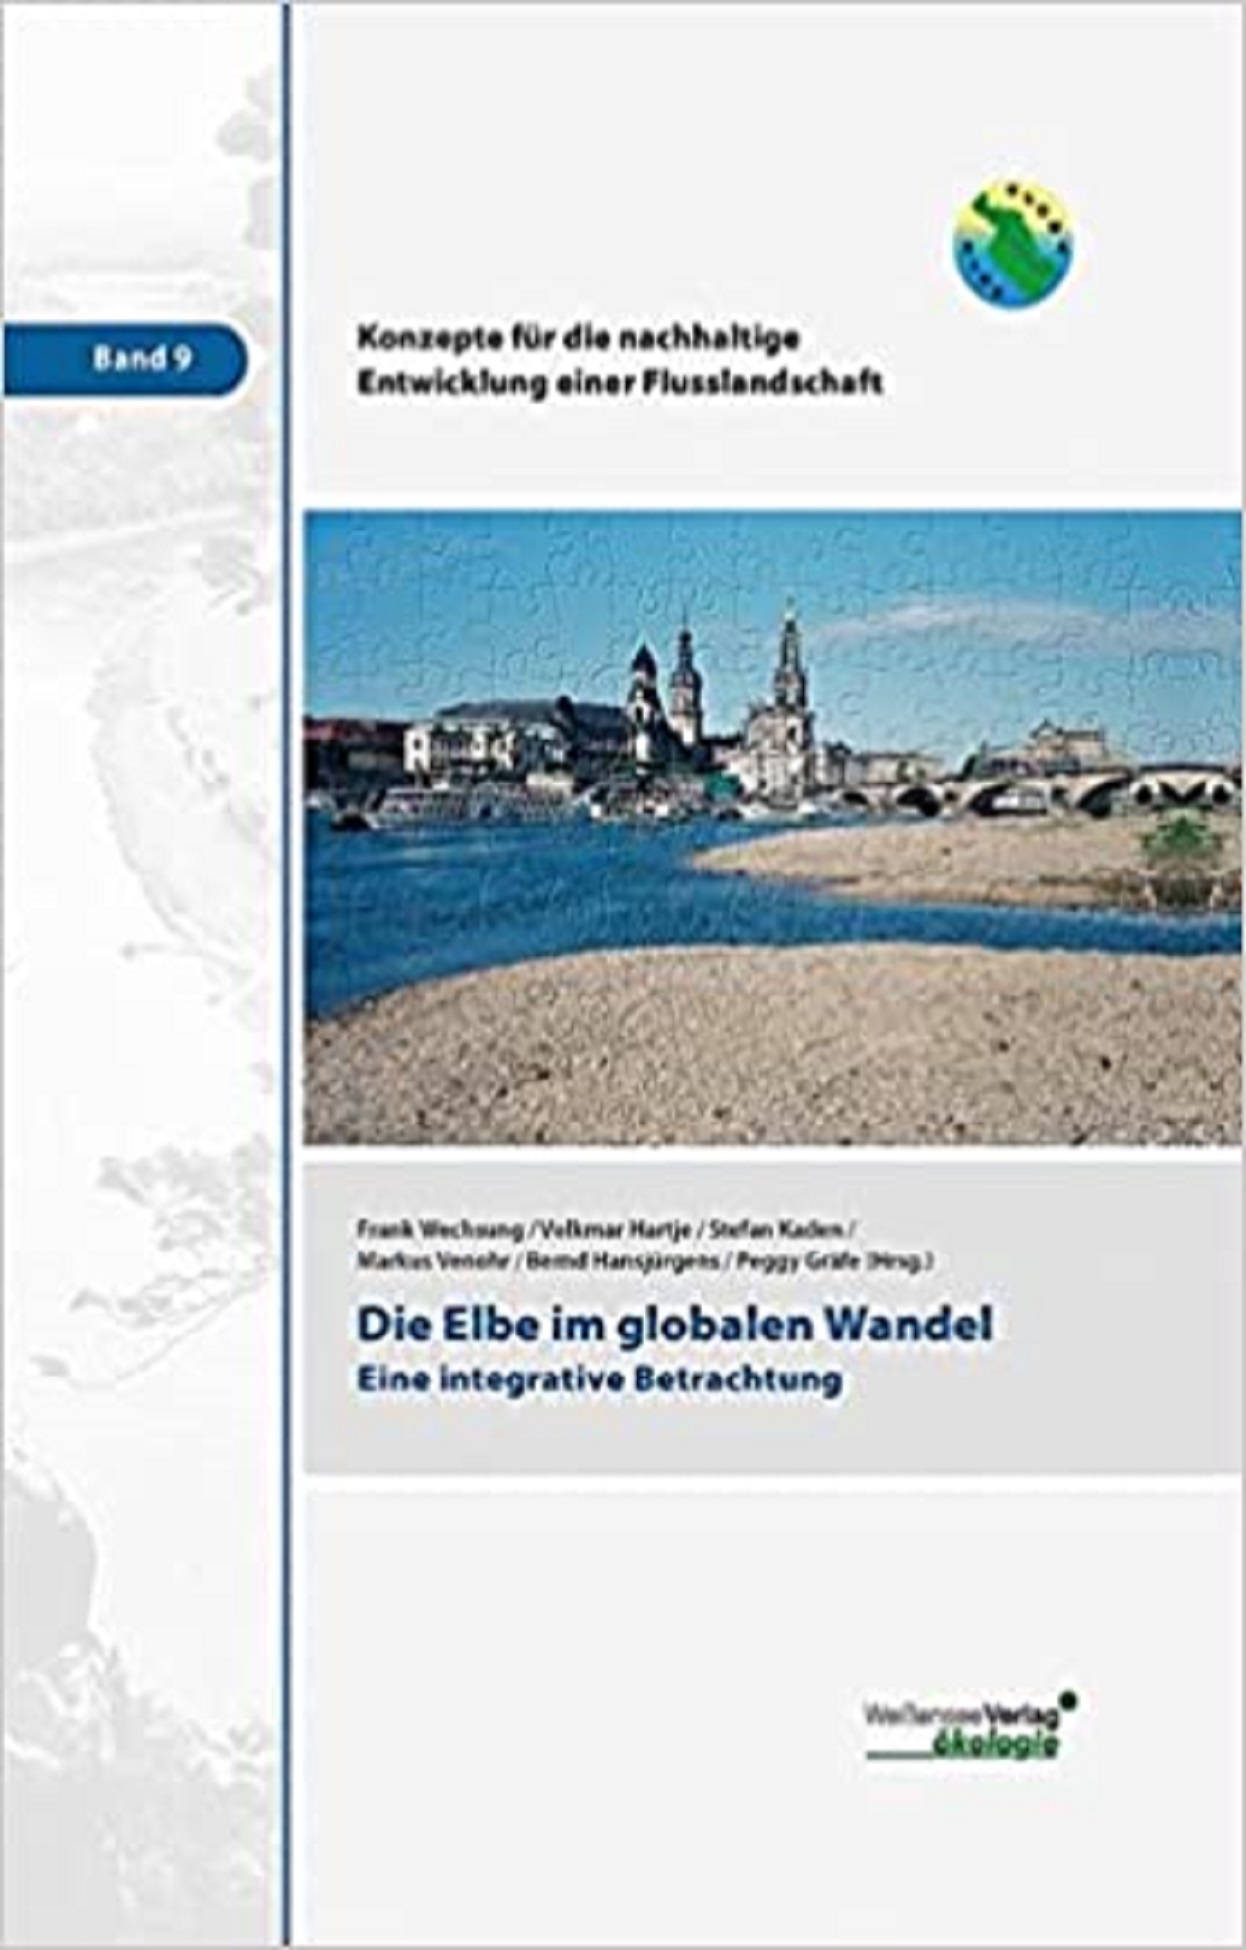 Die Elbe im globalen Wandel. Eine integrative Betrachtung.